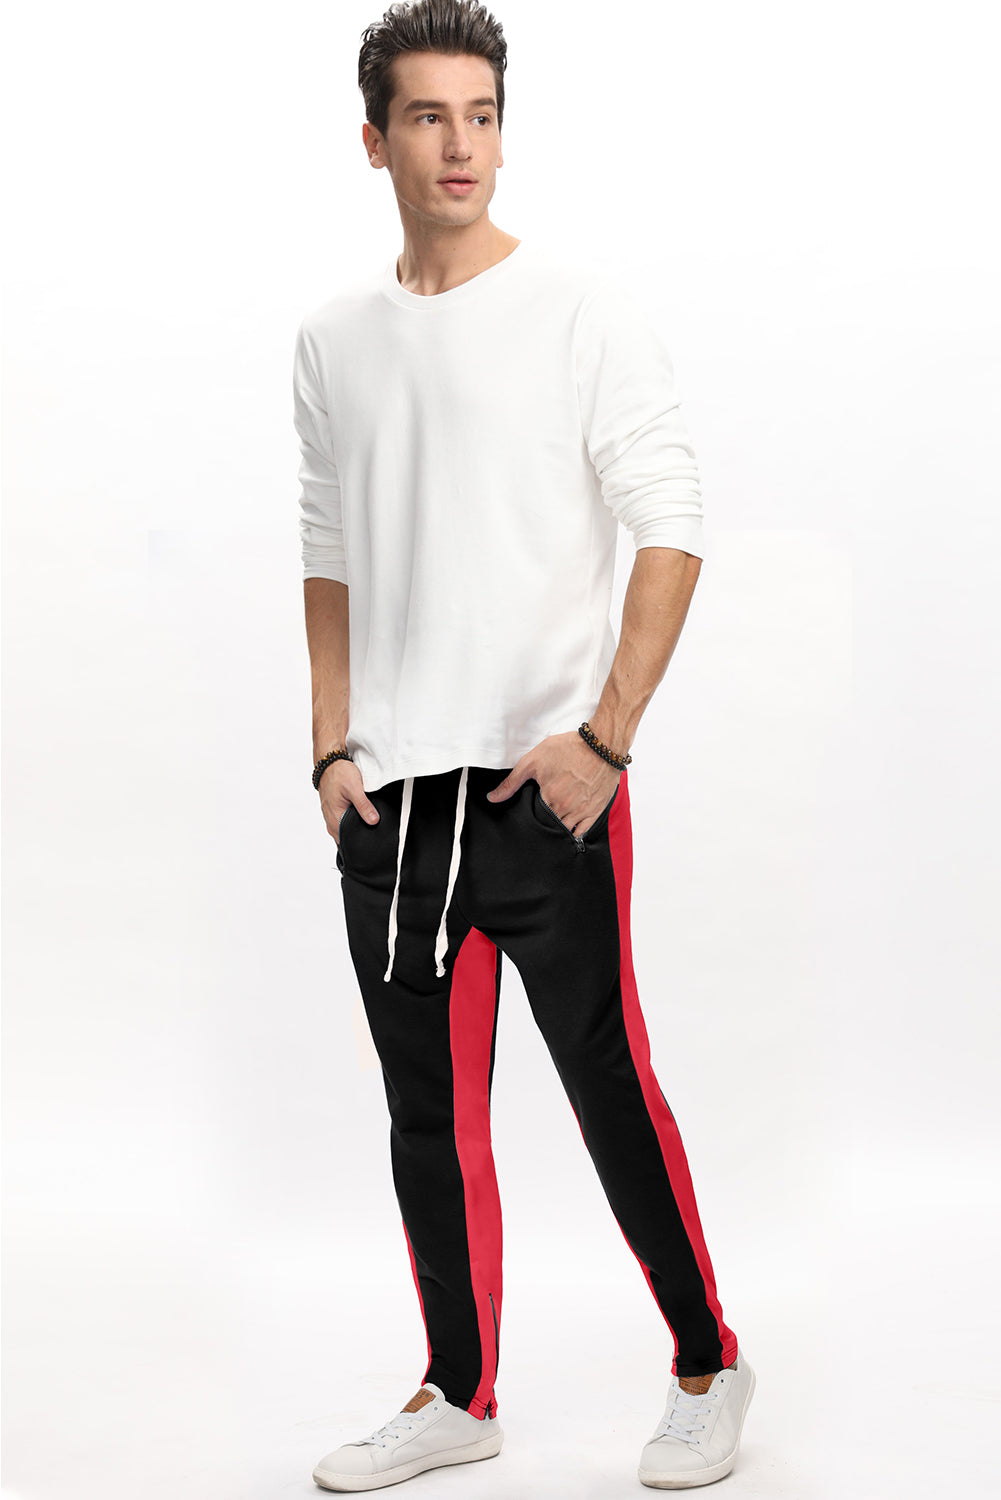 Red Colorblock Patchwork Zipper Casual Mens Joggers Men's Pants JT's Designer Fashion